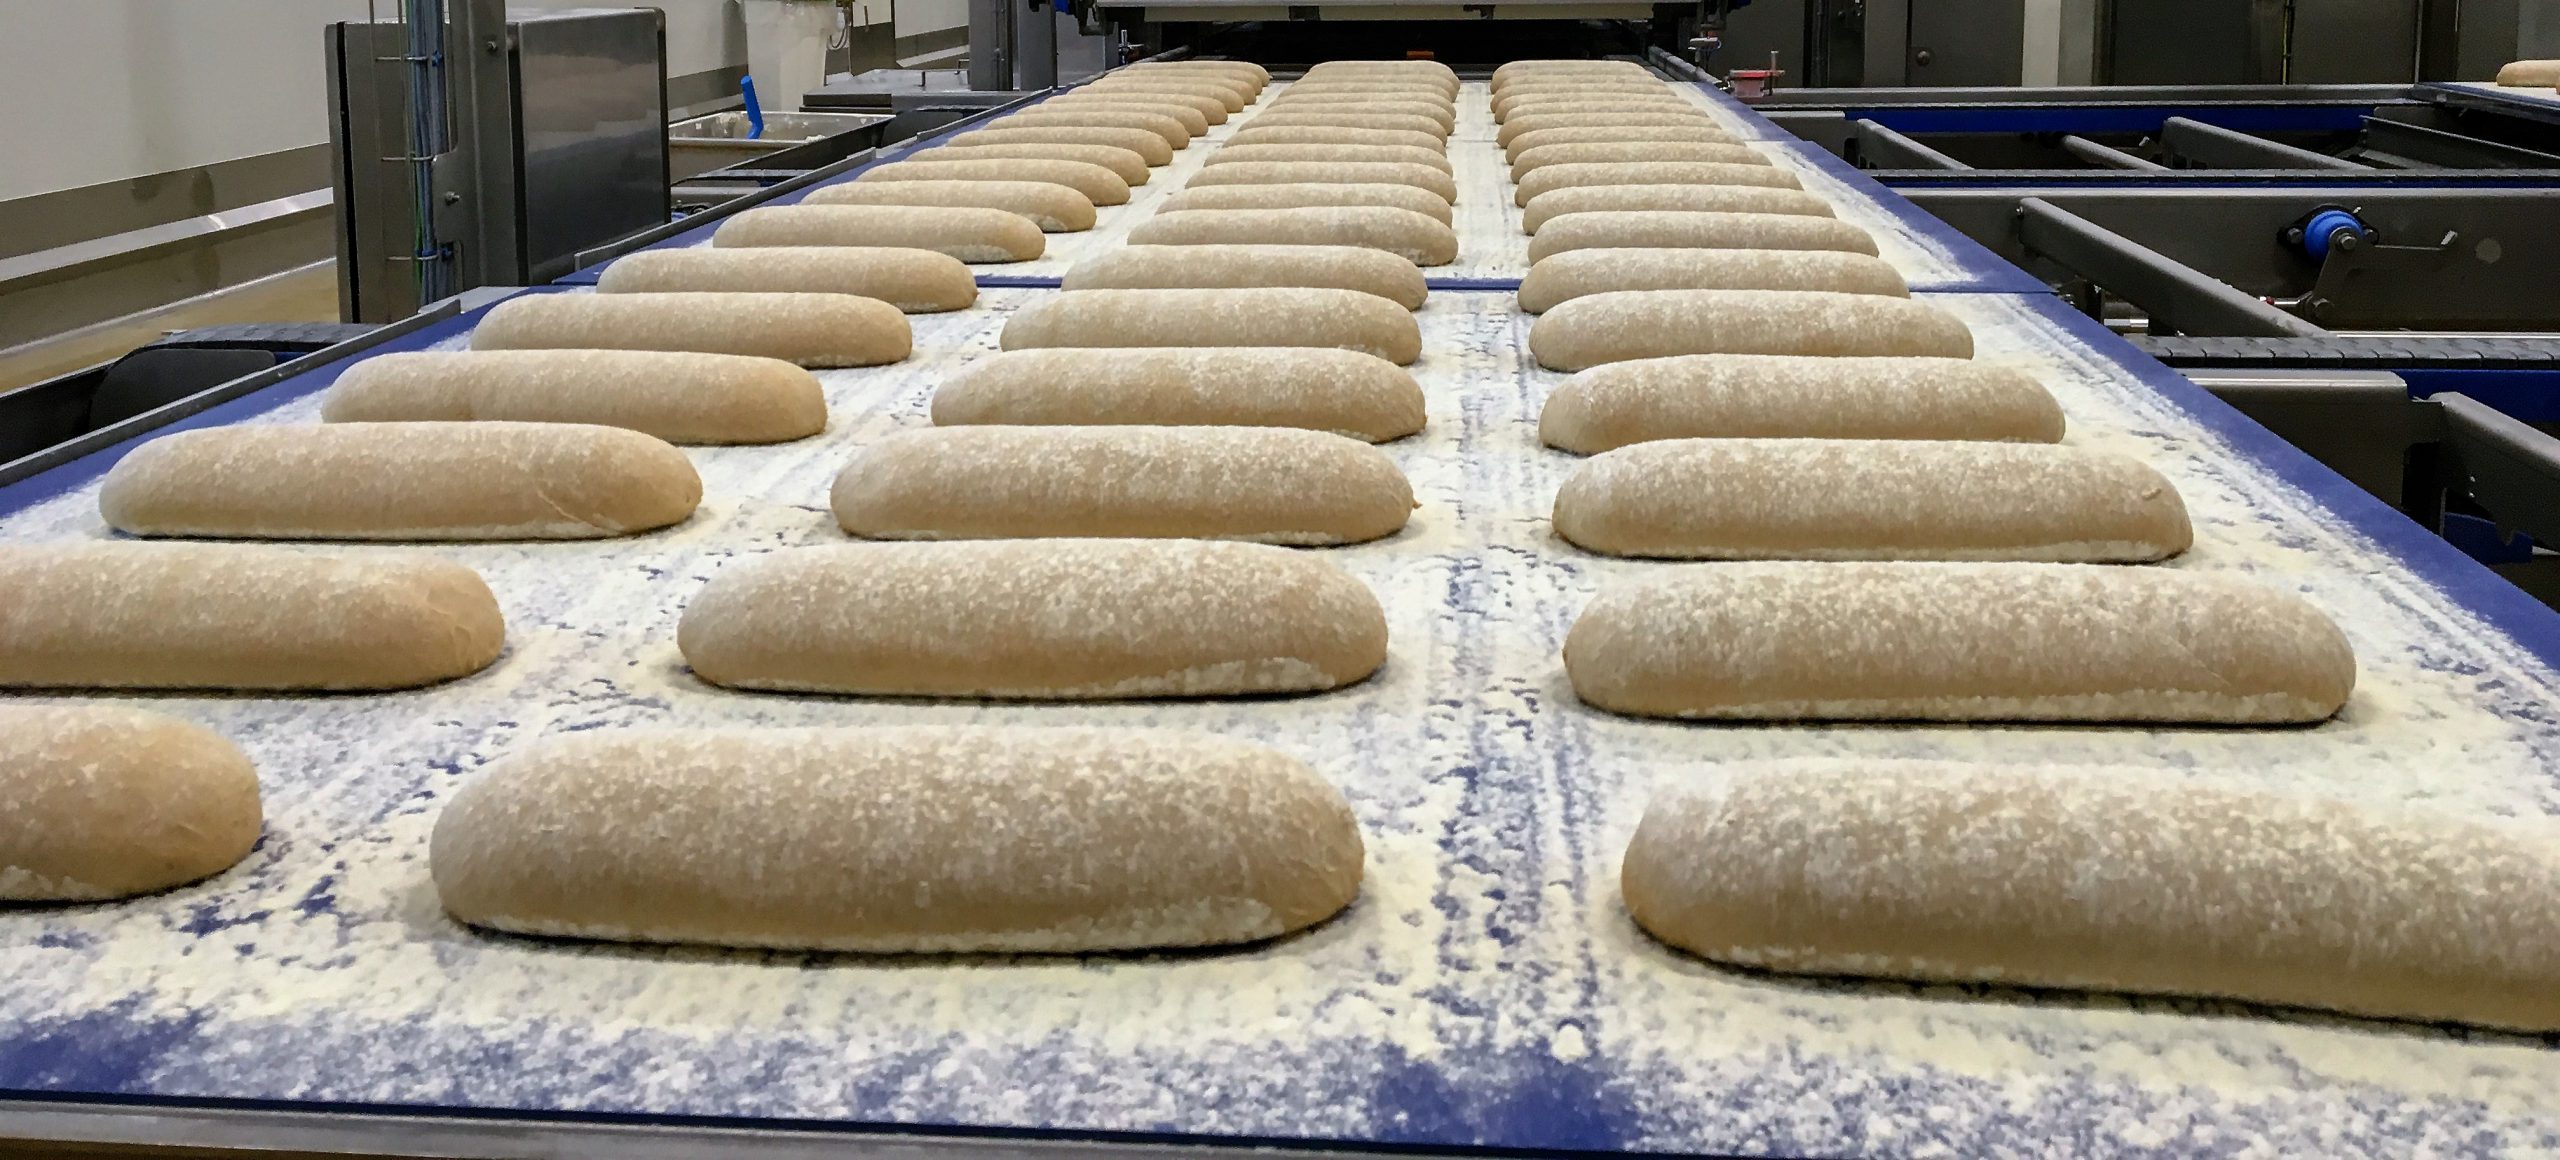 Le process industriel de fabrication du pain